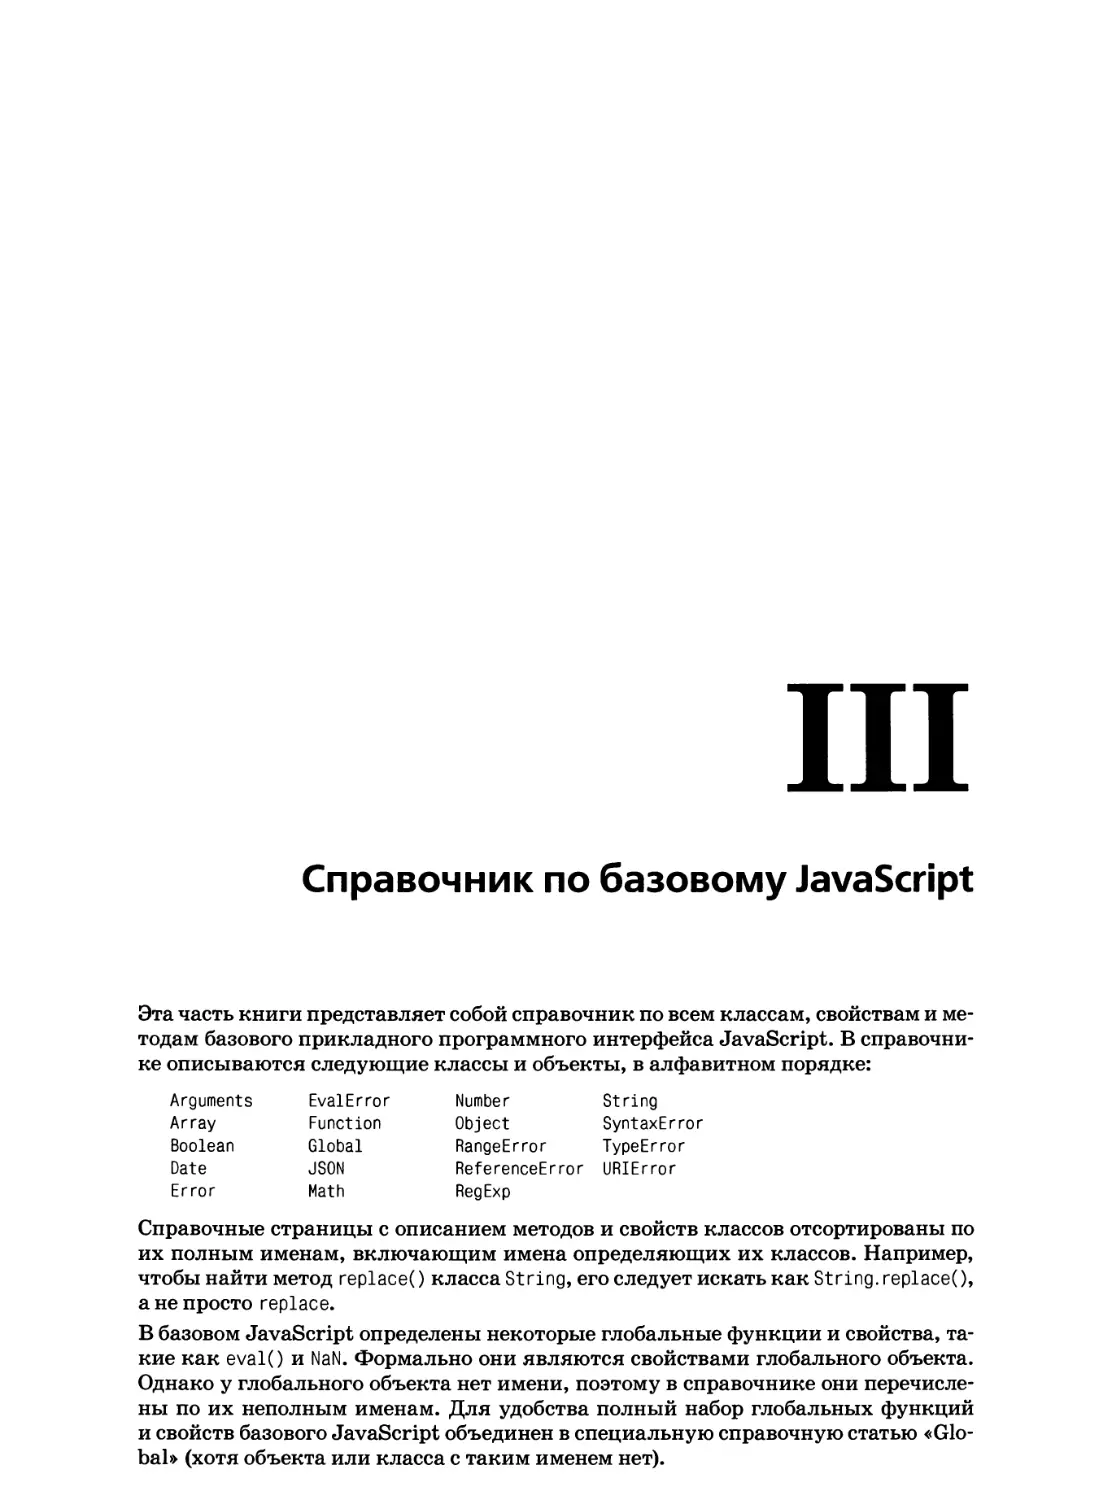 III. Справочник по базовому JavaScript